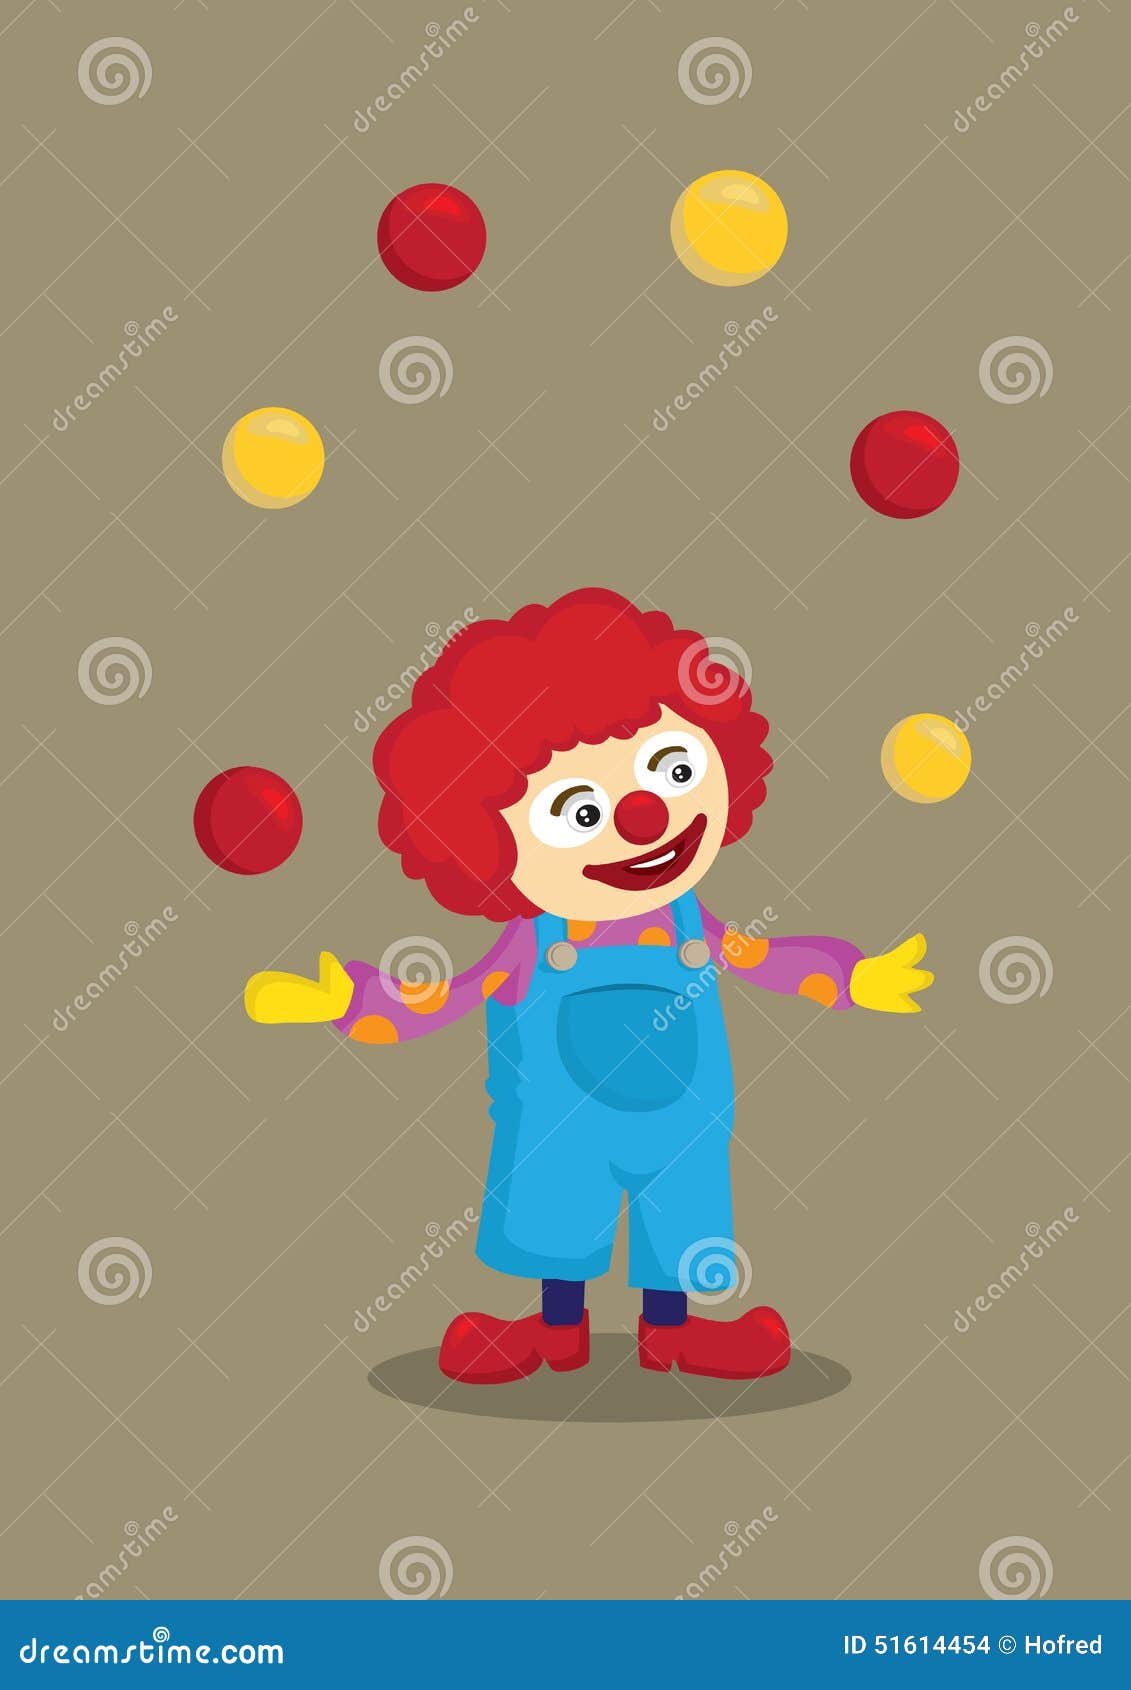 Jonglierender Clown Vector Cartoon Character Vektor Abbildung ...